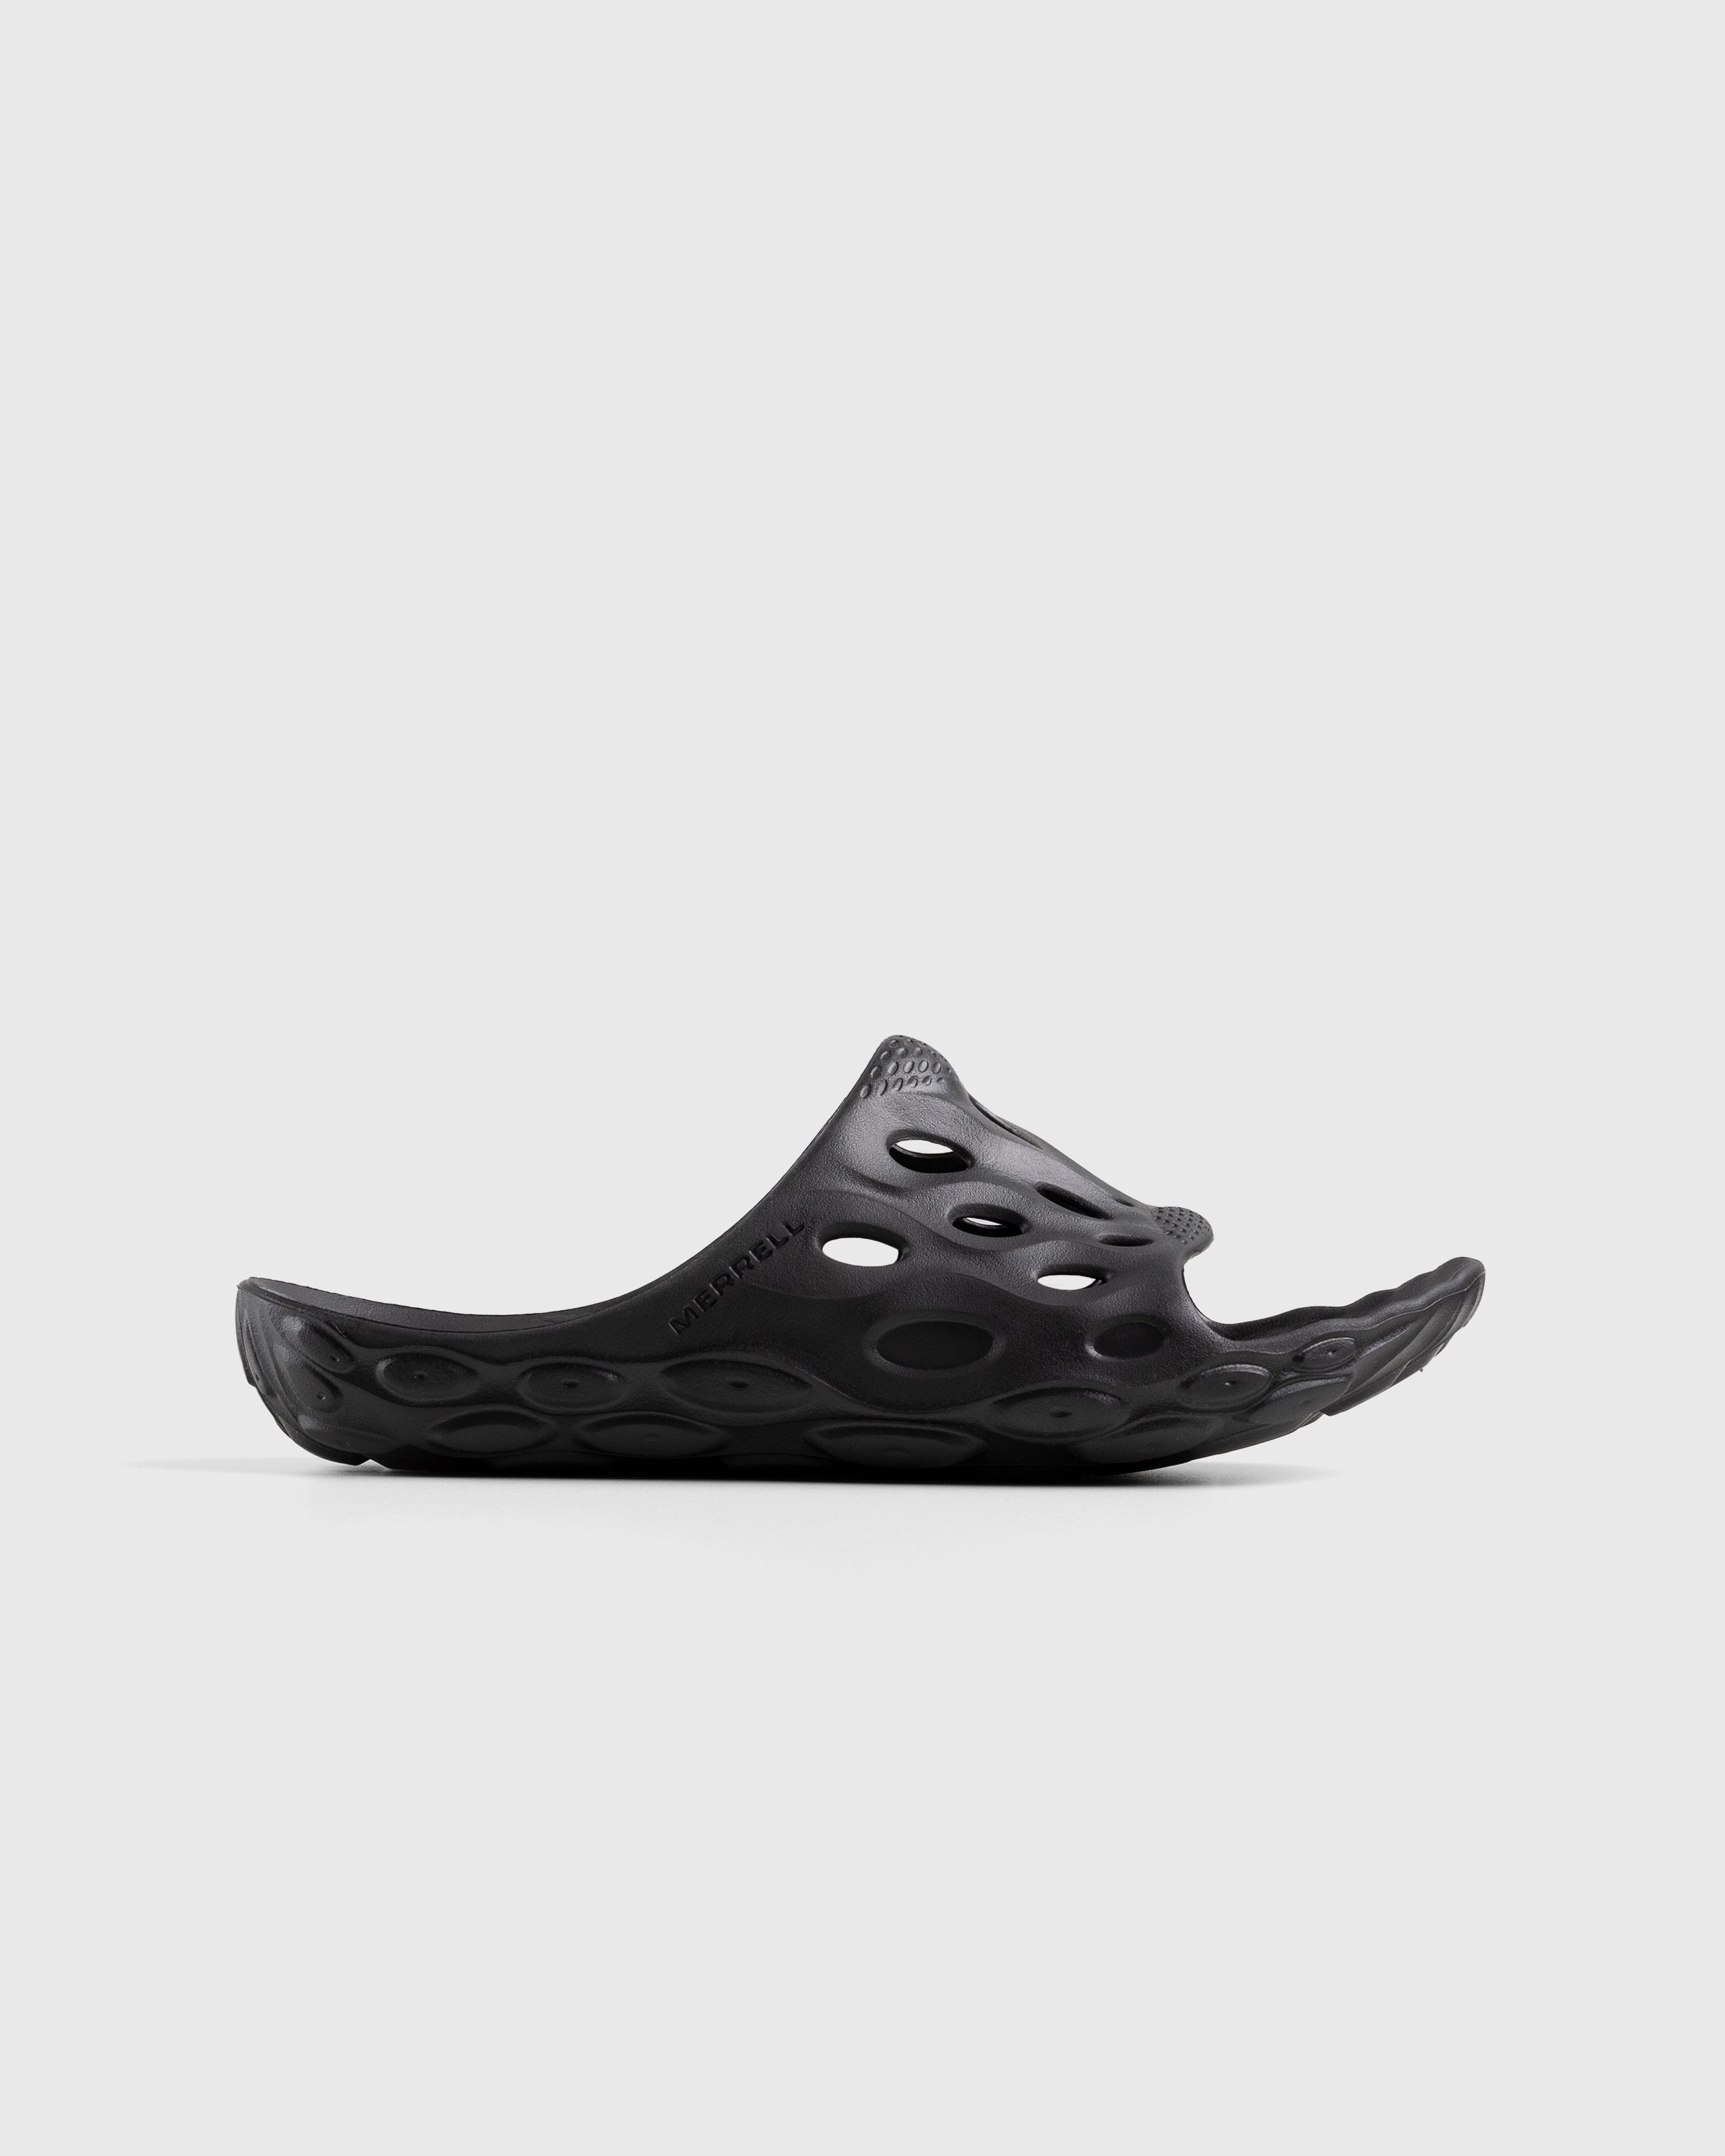 Merrell - Hydro Slide Black/Grey - Footwear - Black - Image 1